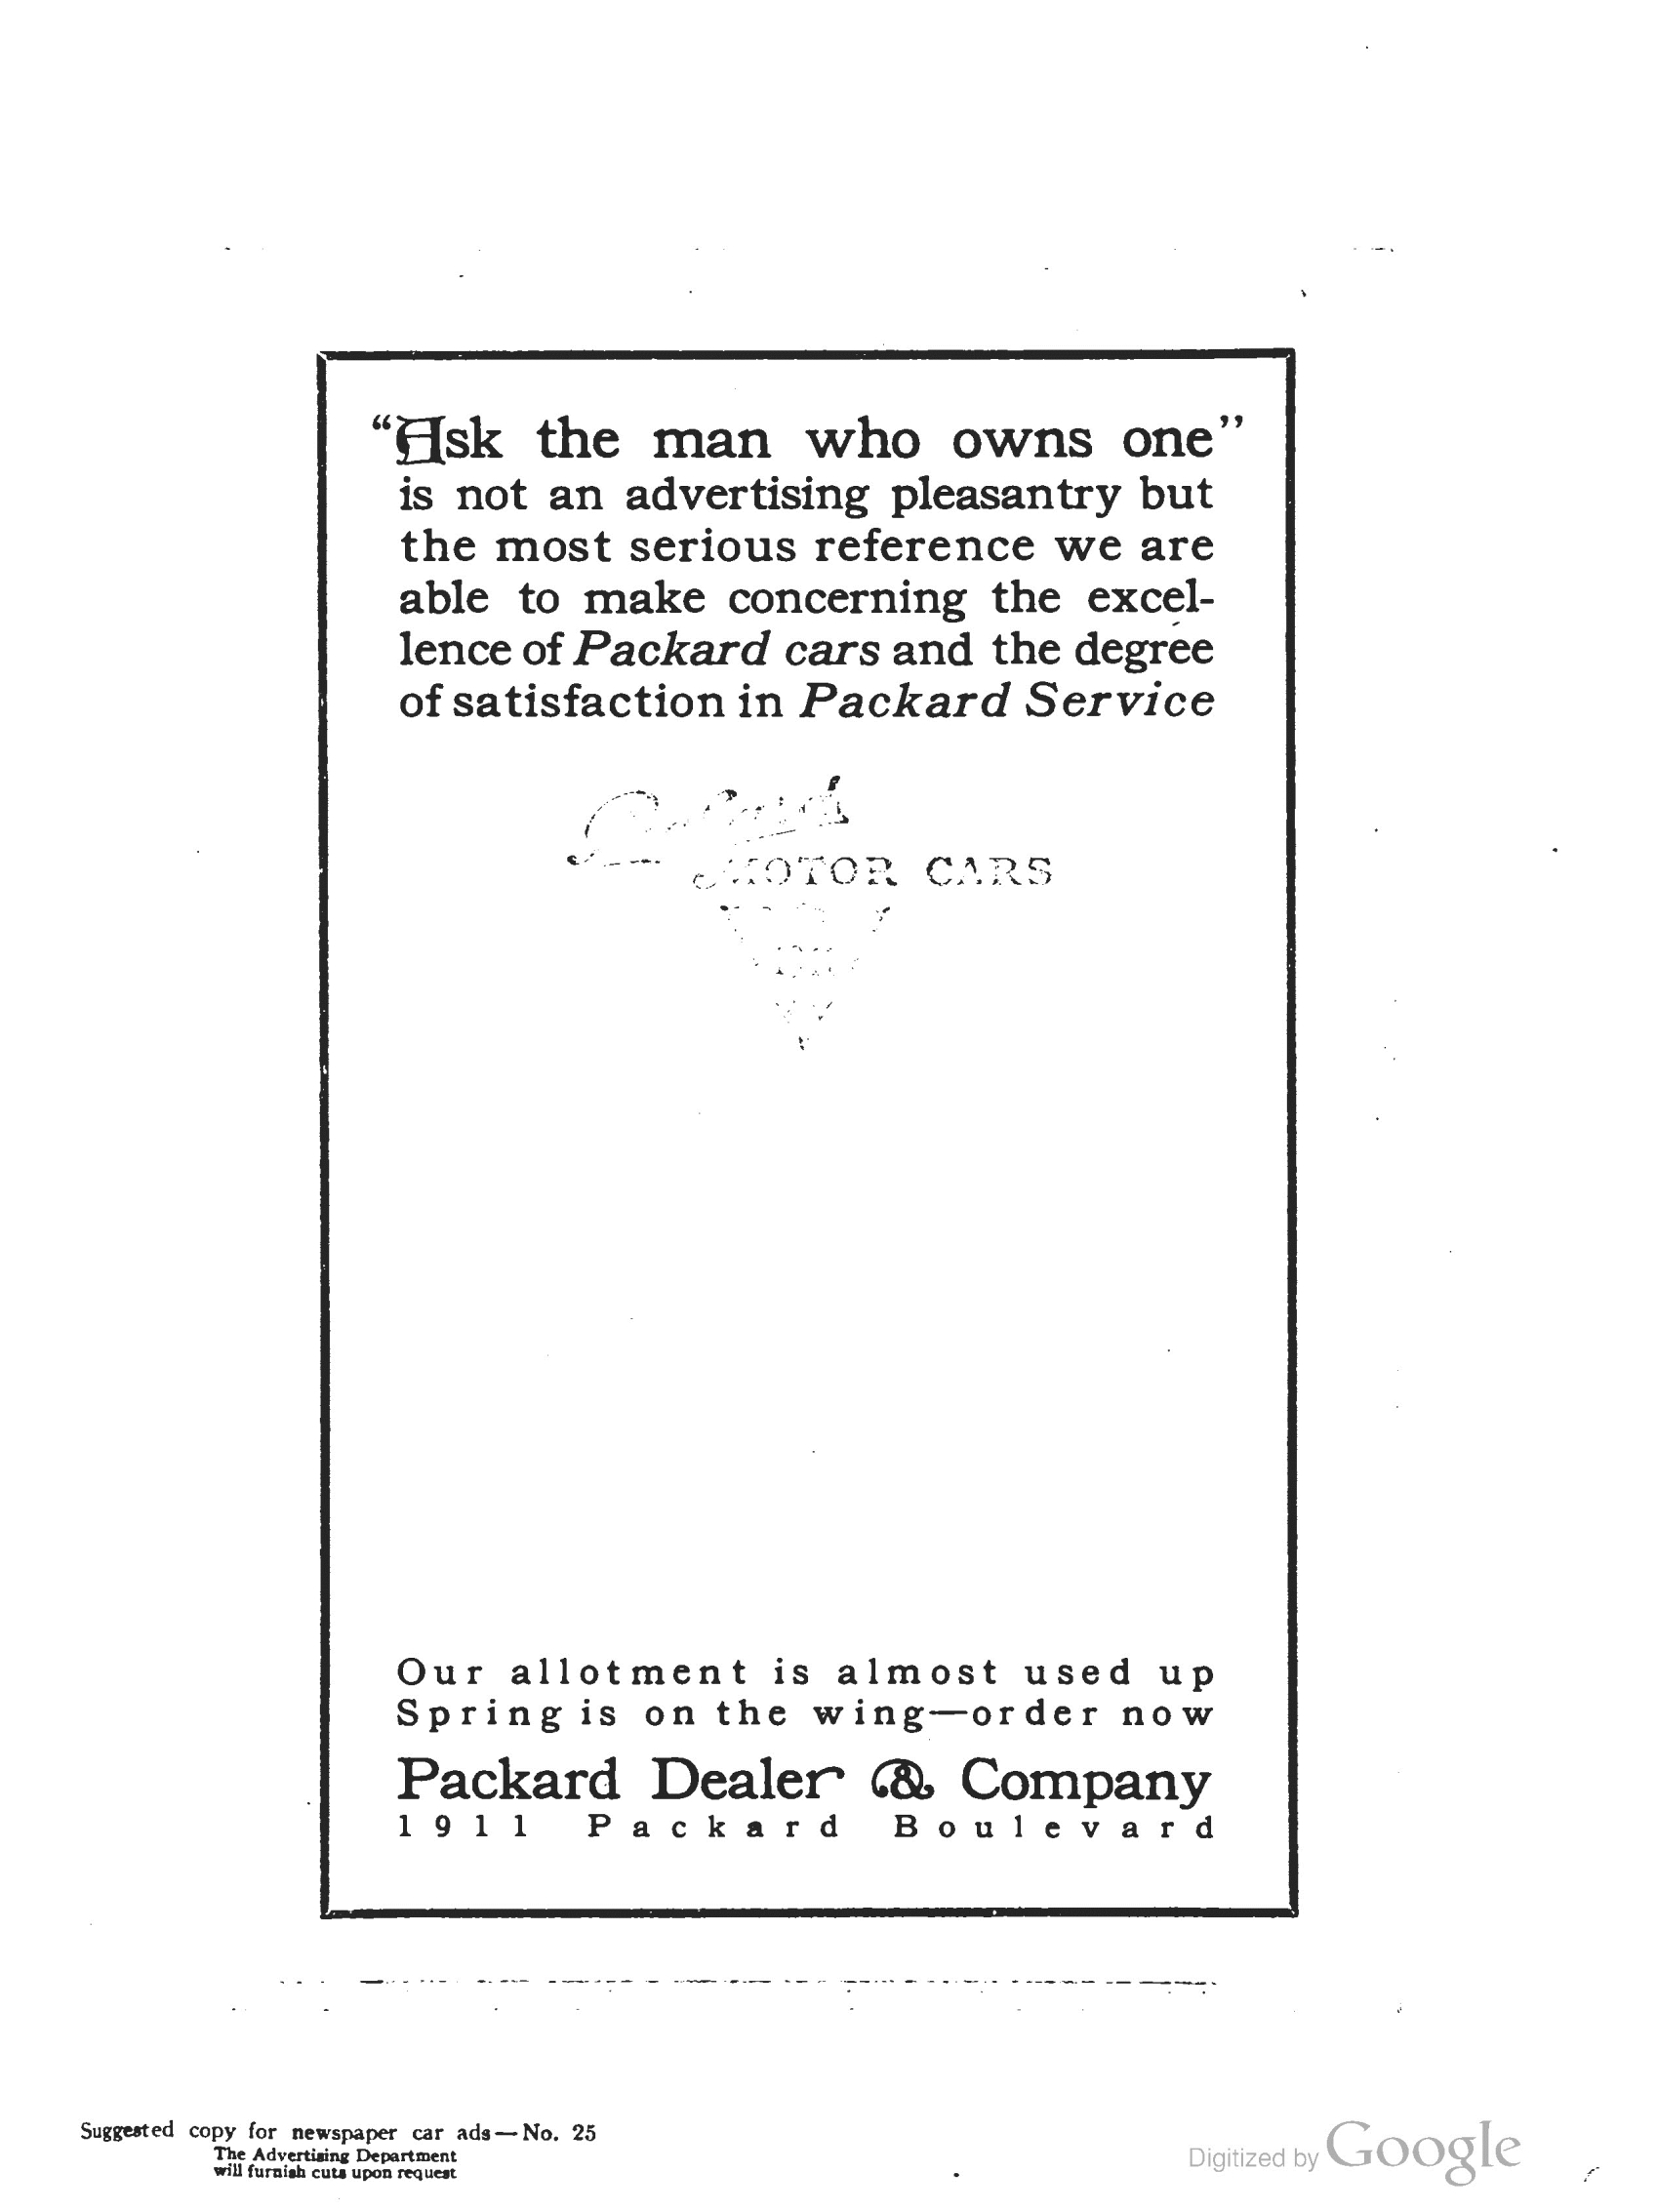 1911_The_Packard_Newsletter-039